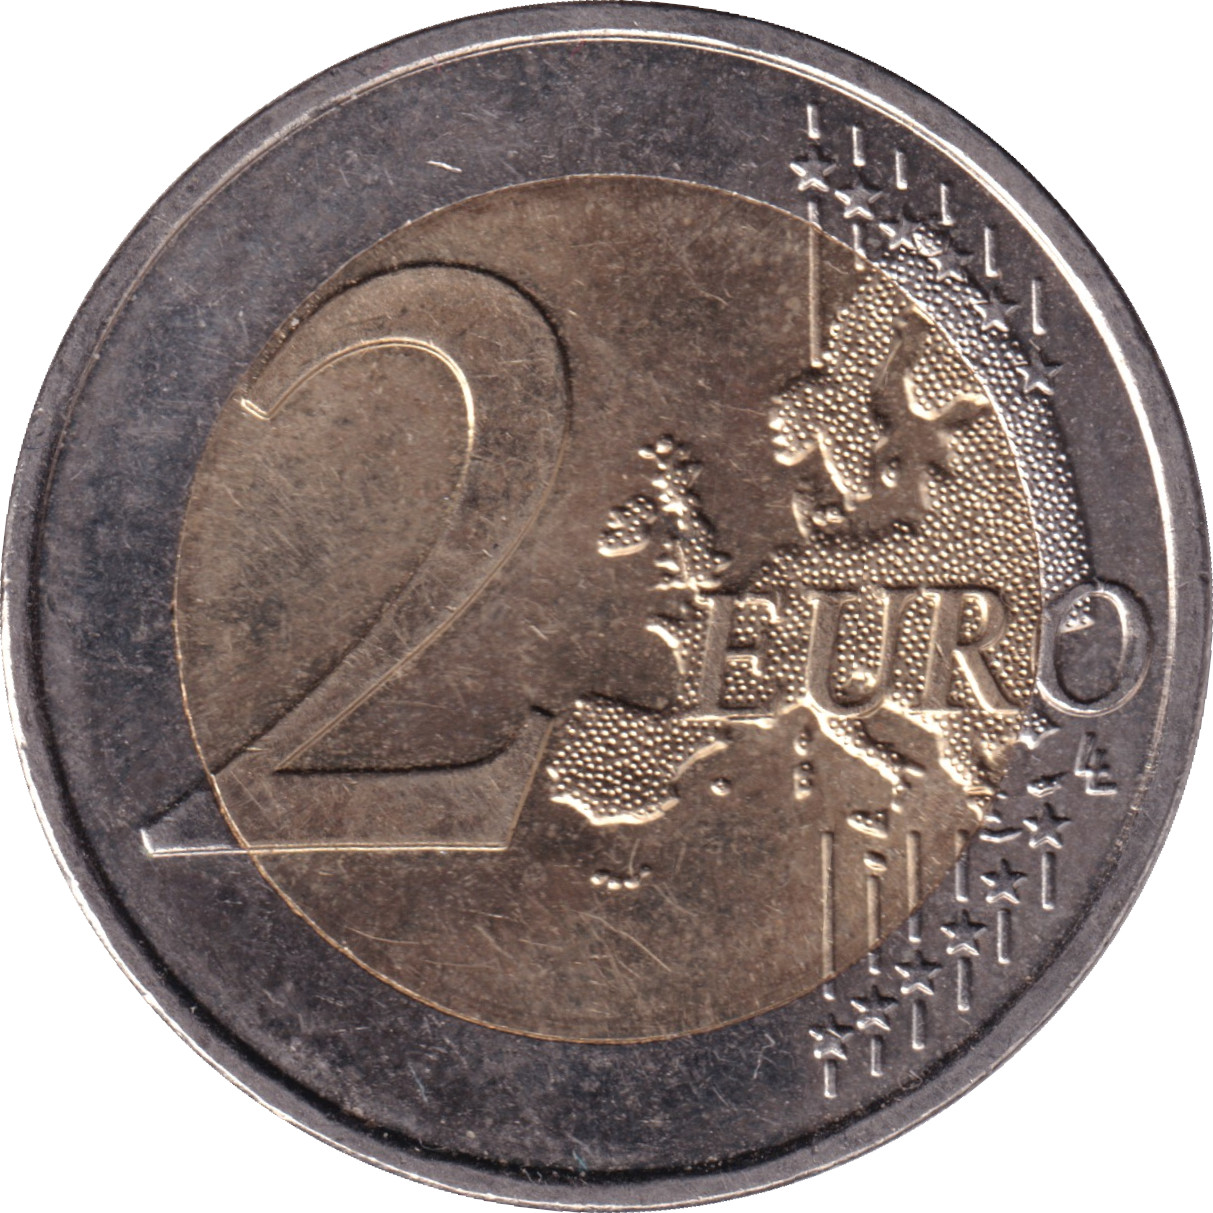 2 euro - Bataille des Thermopyles